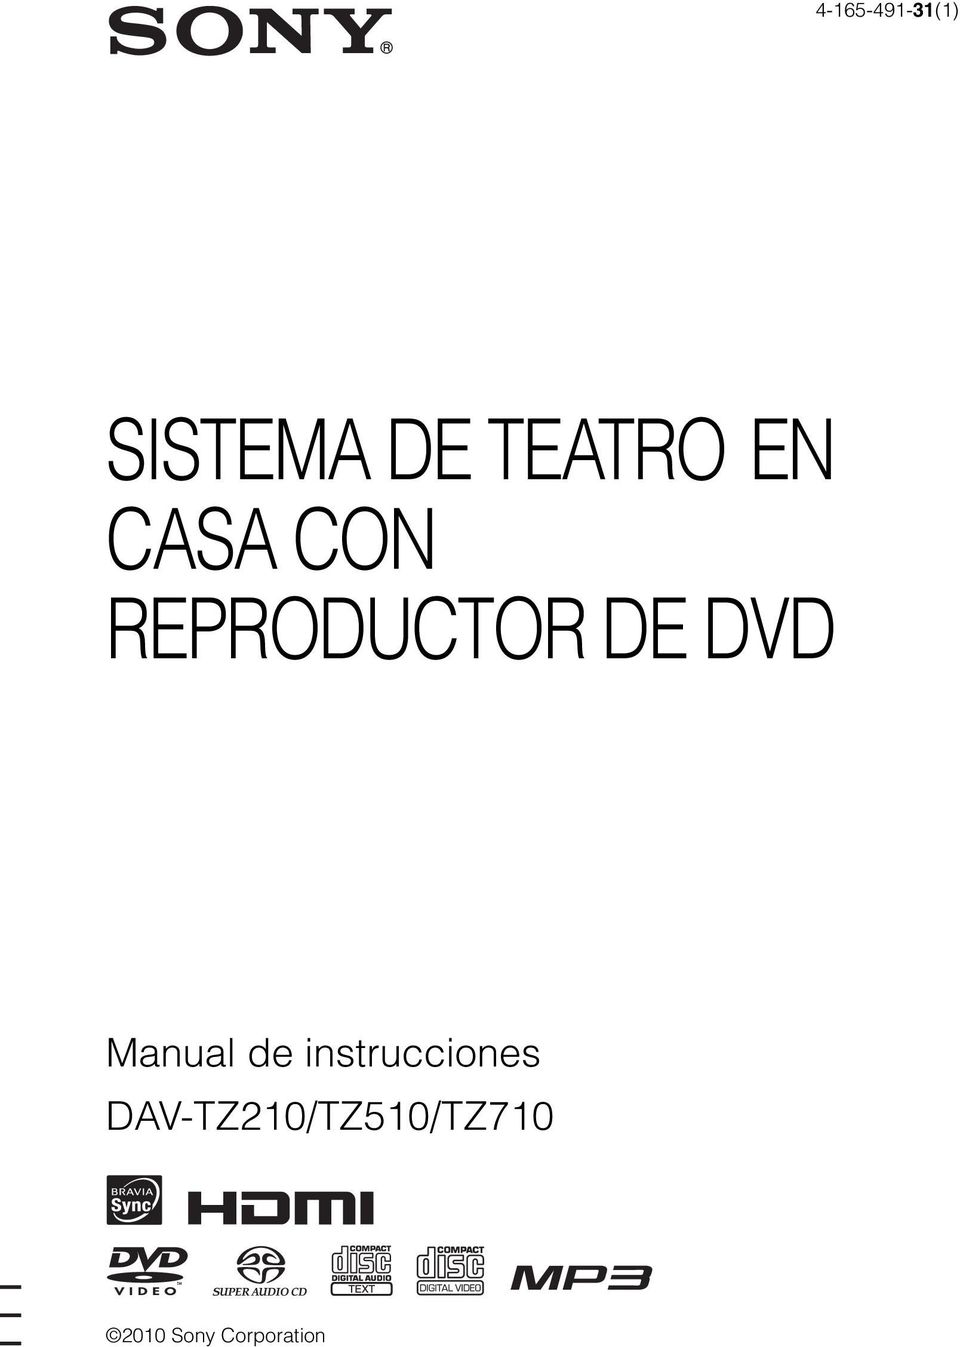 DE DVD Manual de instrucciones